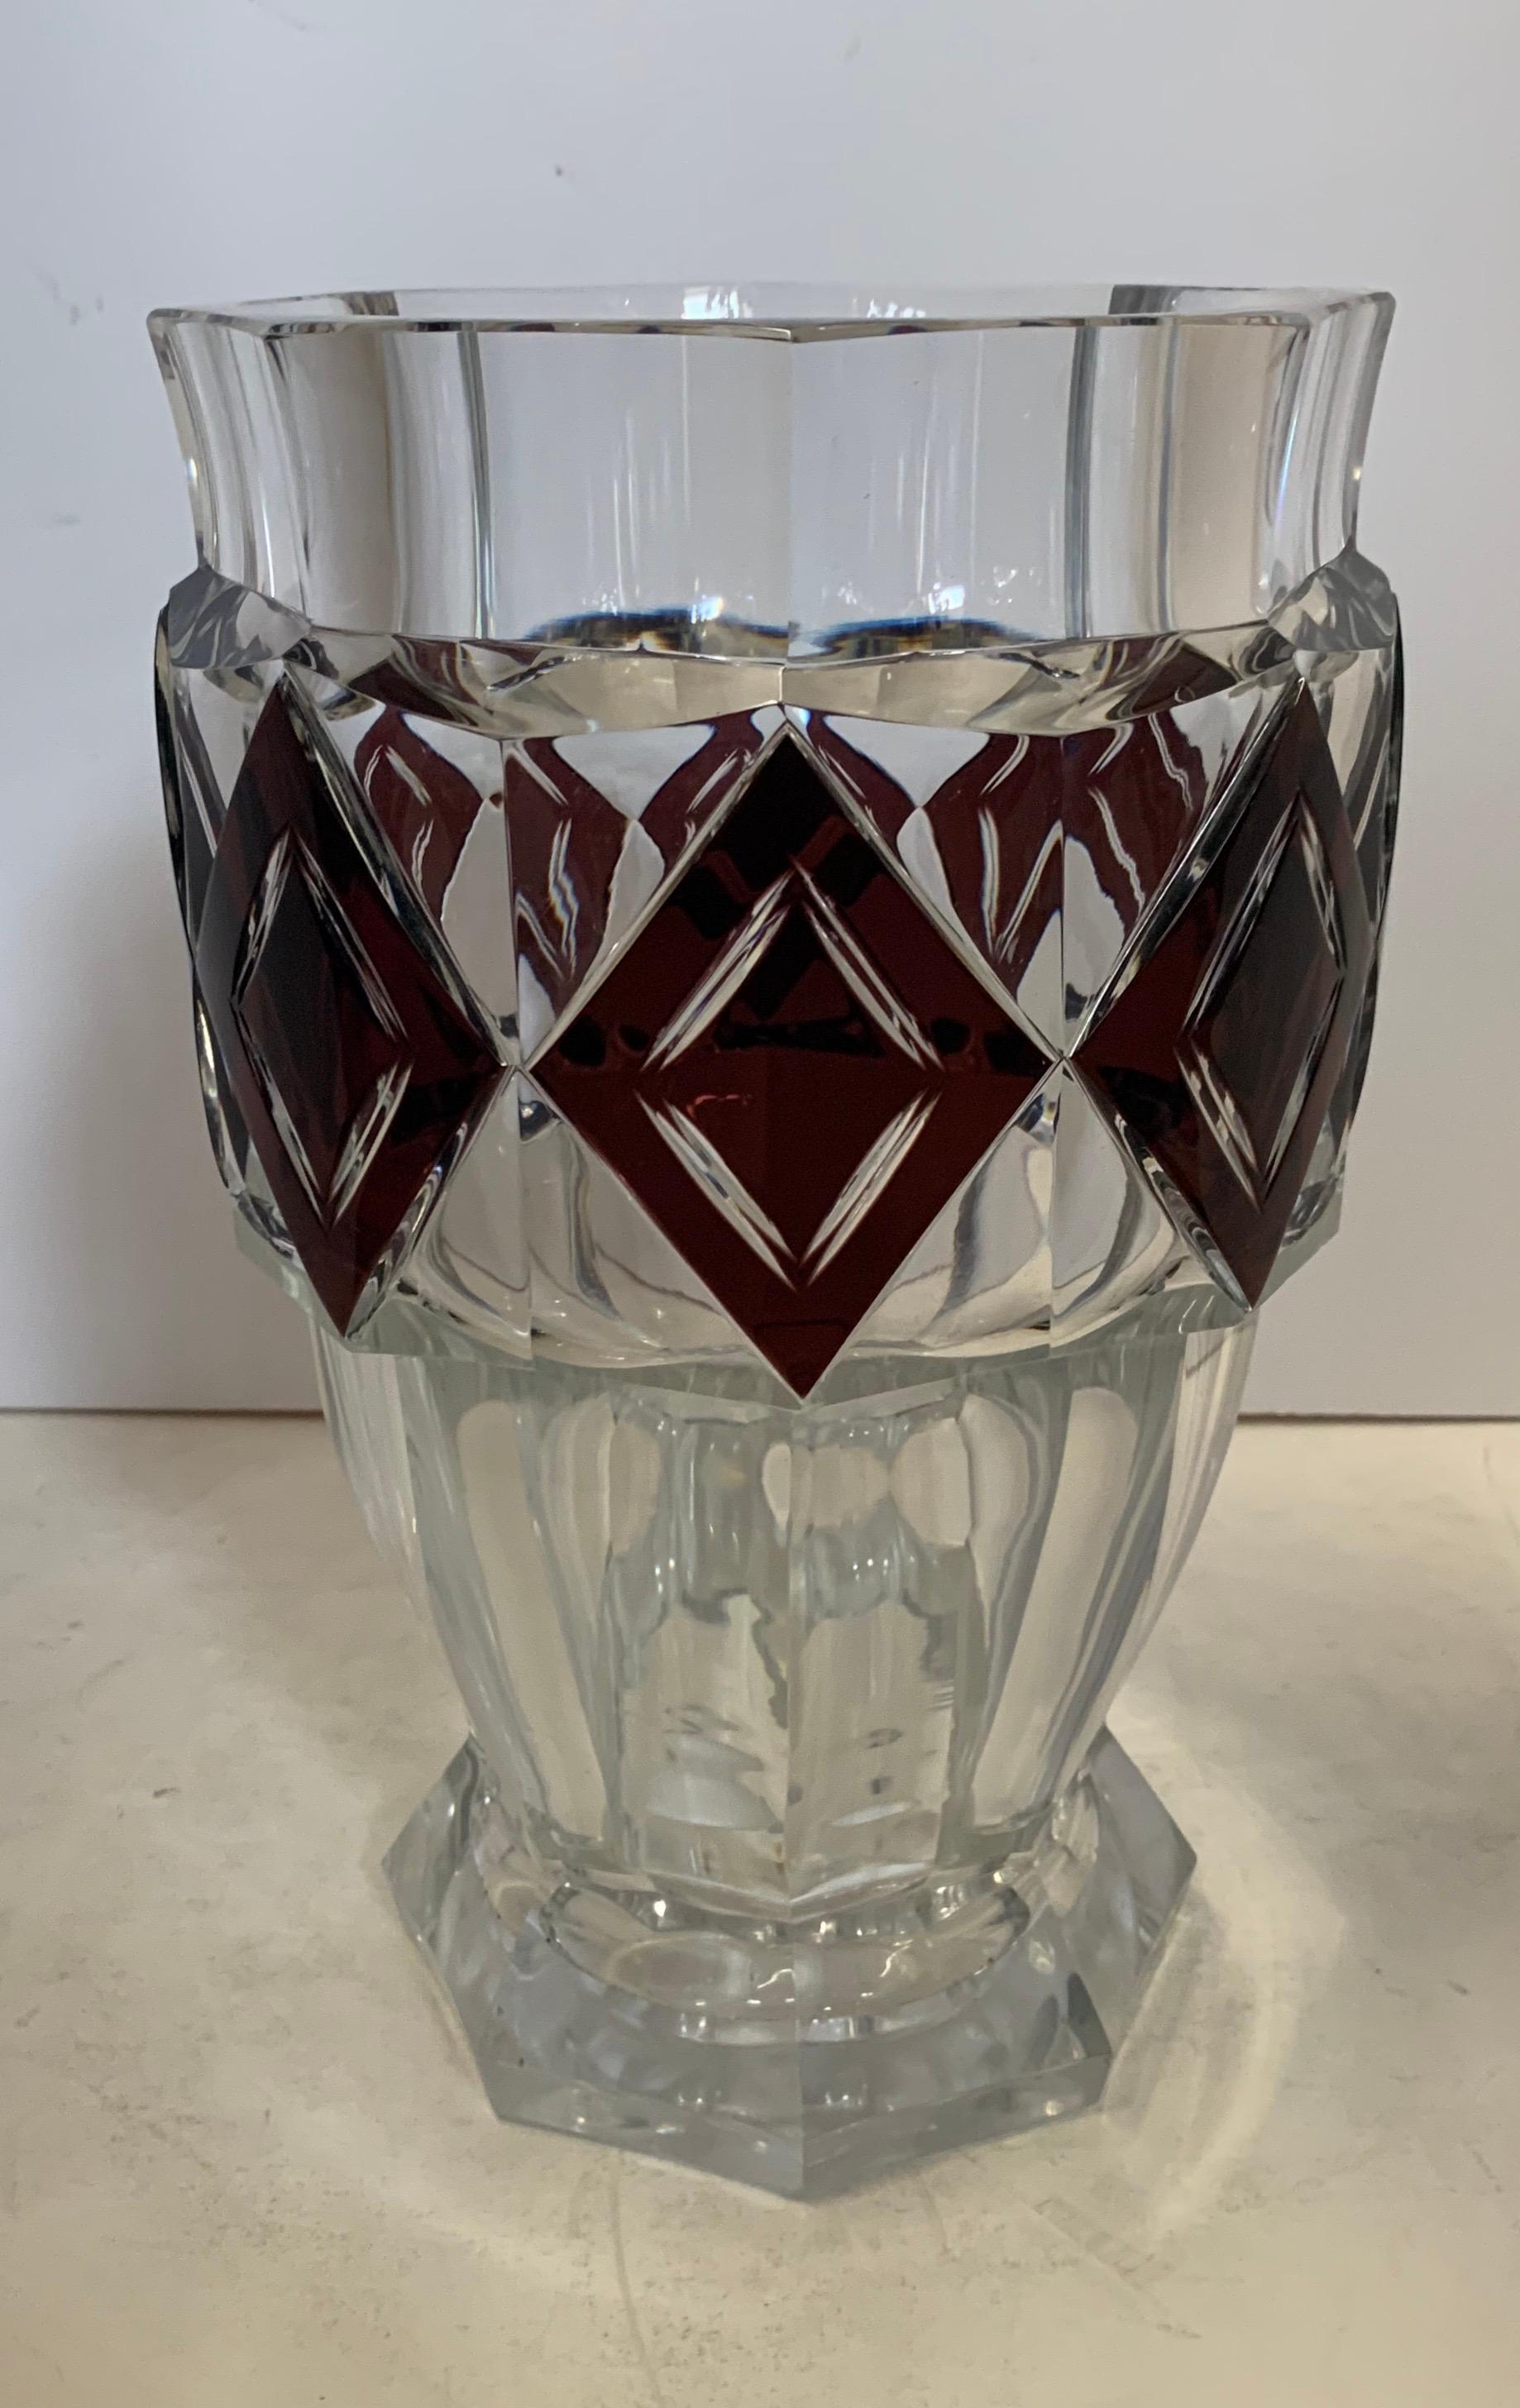 A wonderful Val Saint Lambert amethyst diamond overlay art glass / crystal Kipling large vase unsigned.
Measures: 11 1/2